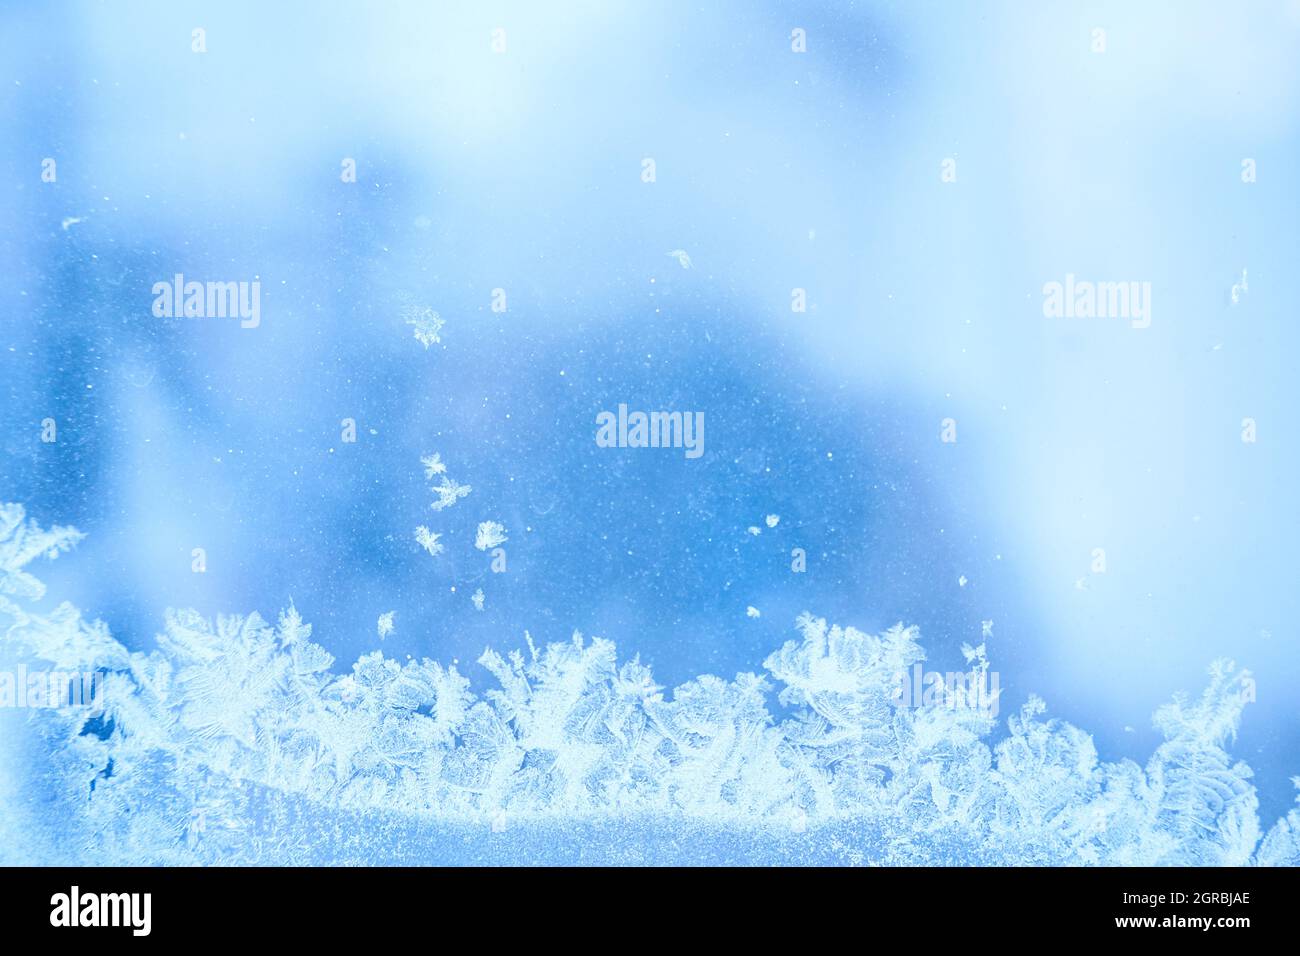 Wintereifrost, gefrorener Hintergrund. Die Textur von mattiertem Fensterglas. Cool kühlen Hintergrund von Schneeflocken. Winterwunderland-Szene. Hochwertige Fotos Stockfoto